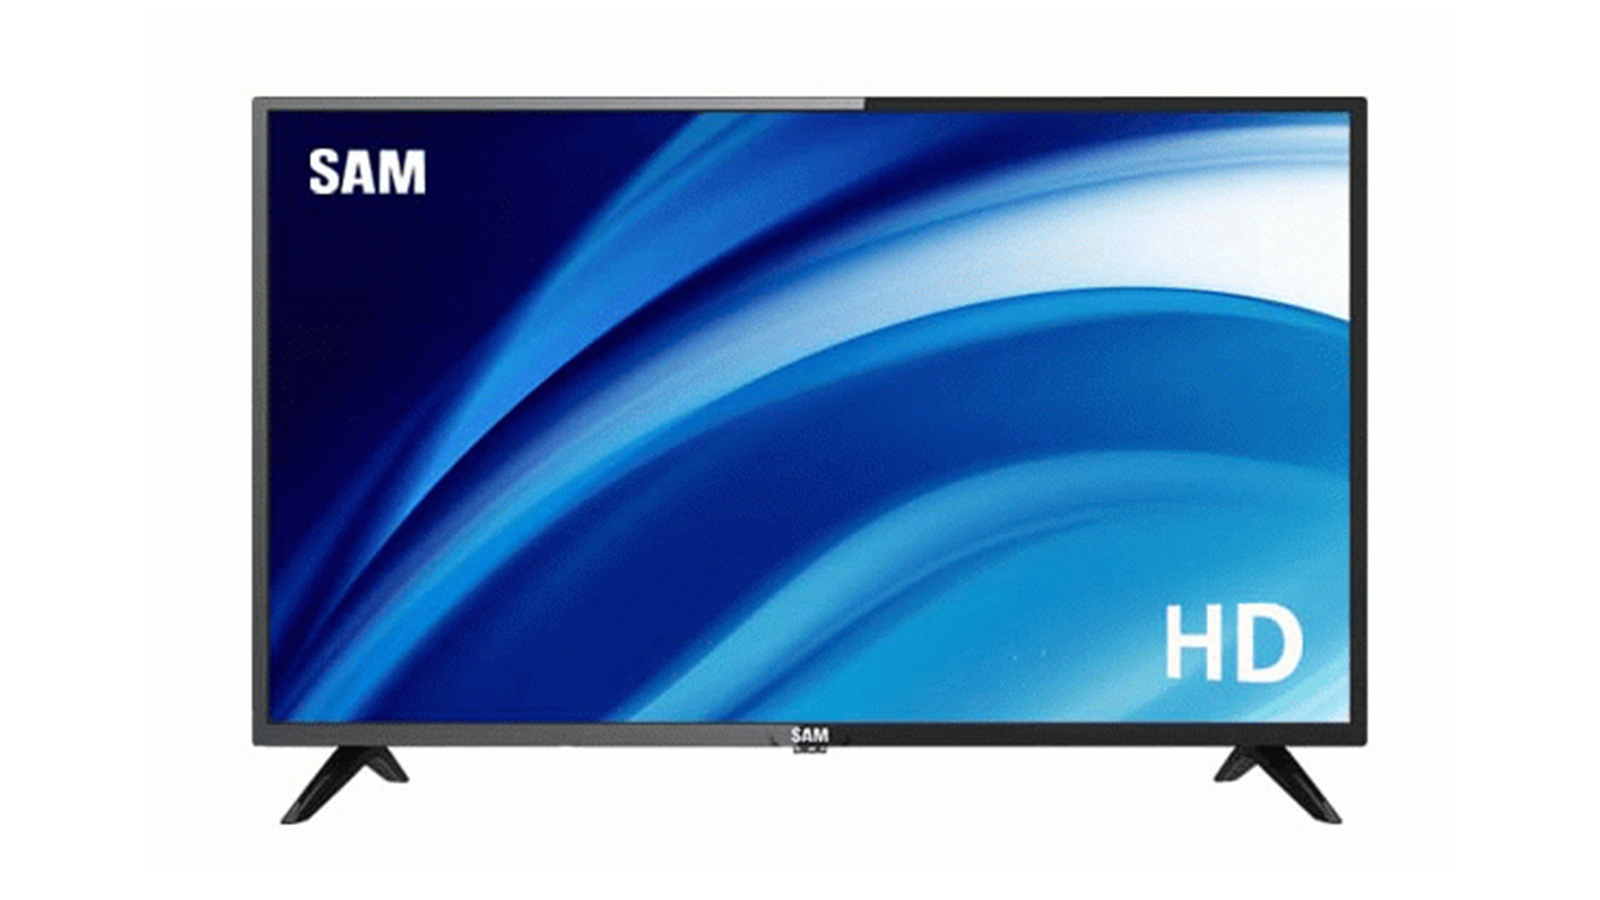 قیمت تلویزیون سام ۳۲ اینچ t4600